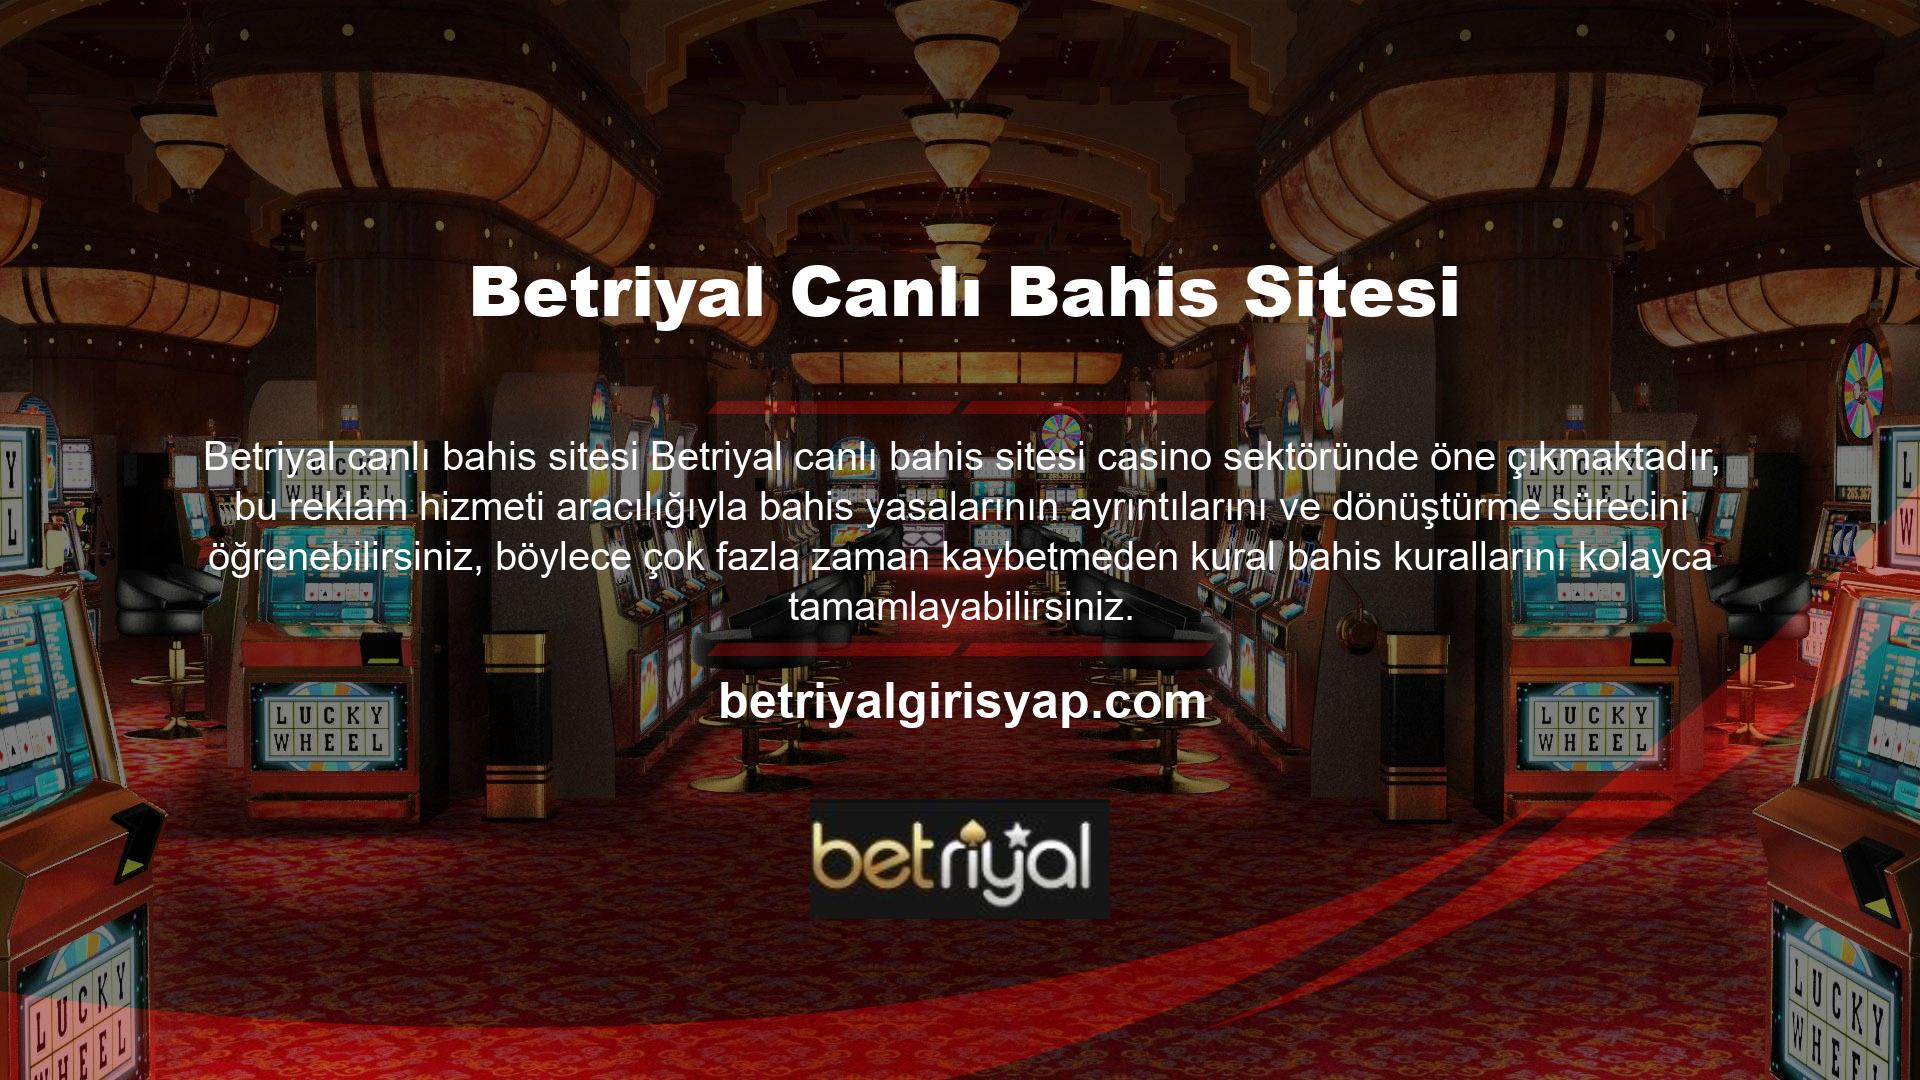 Betriyal casino oyunları ve canlı bahis sitesi, müşterilerine sunduğu tüm fırsatlarla dünya çapında tanınan bir isim haline gelmiştir